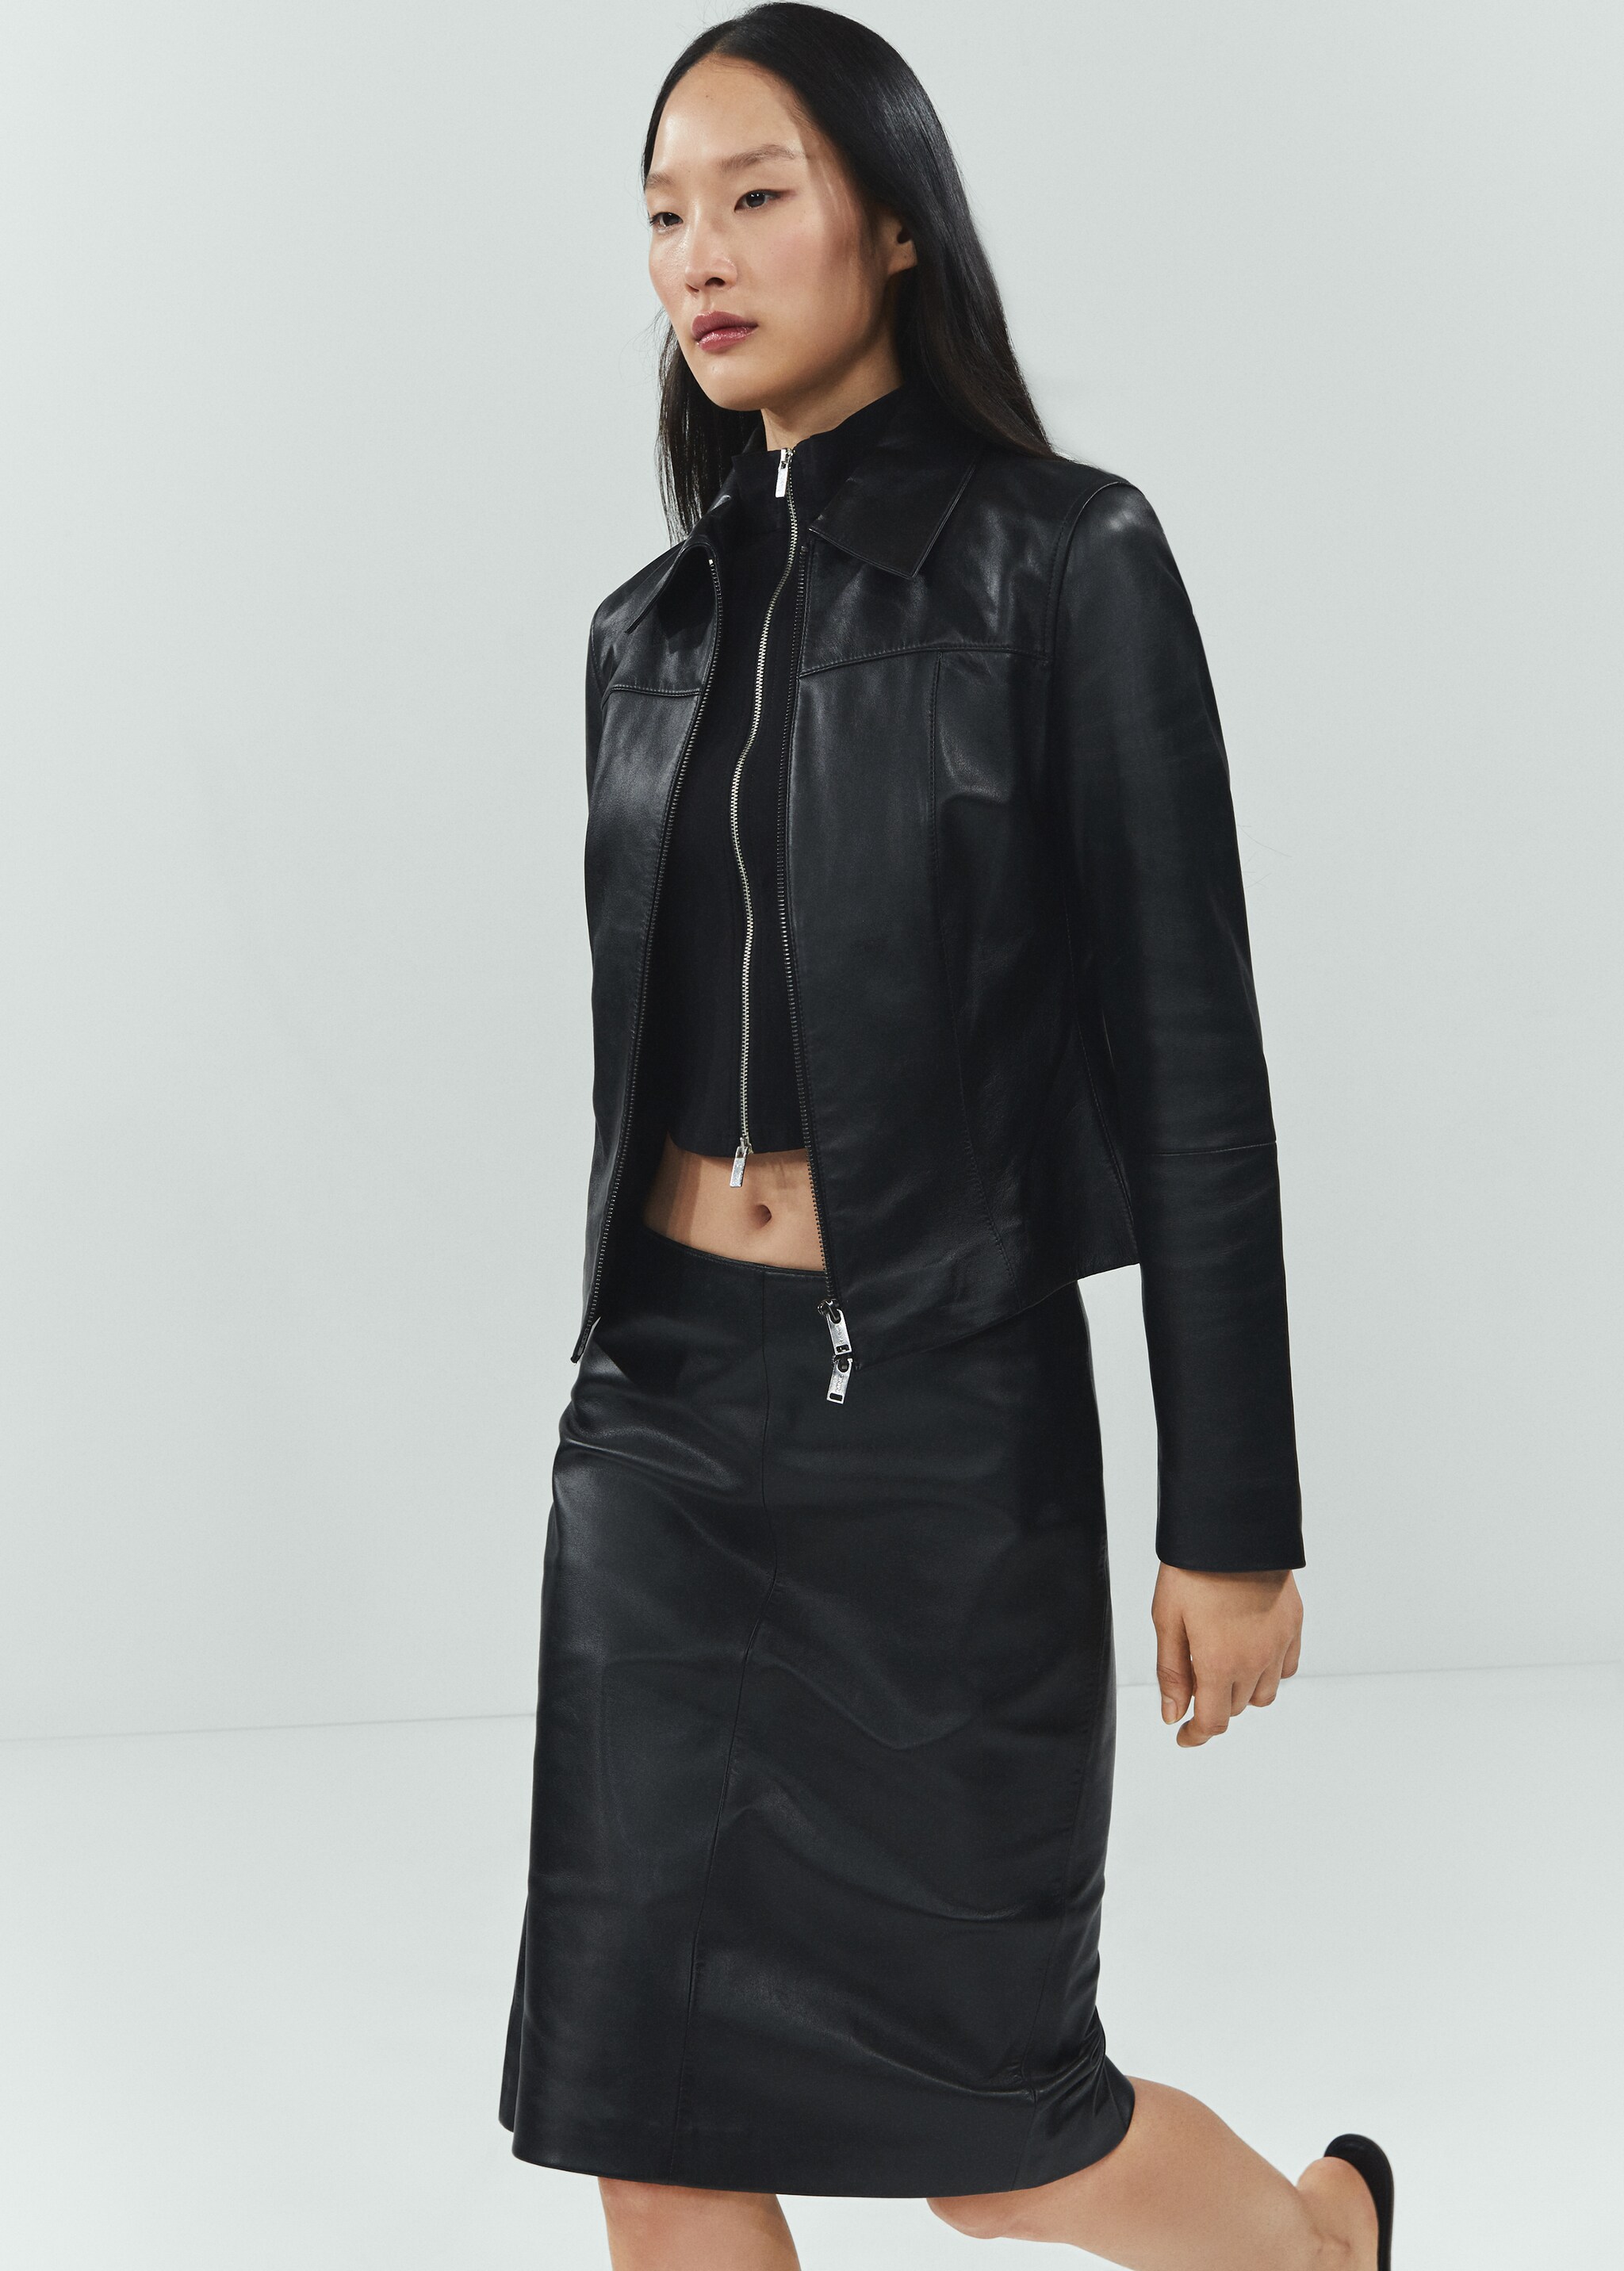 100% leather midi skirt - Medium plane